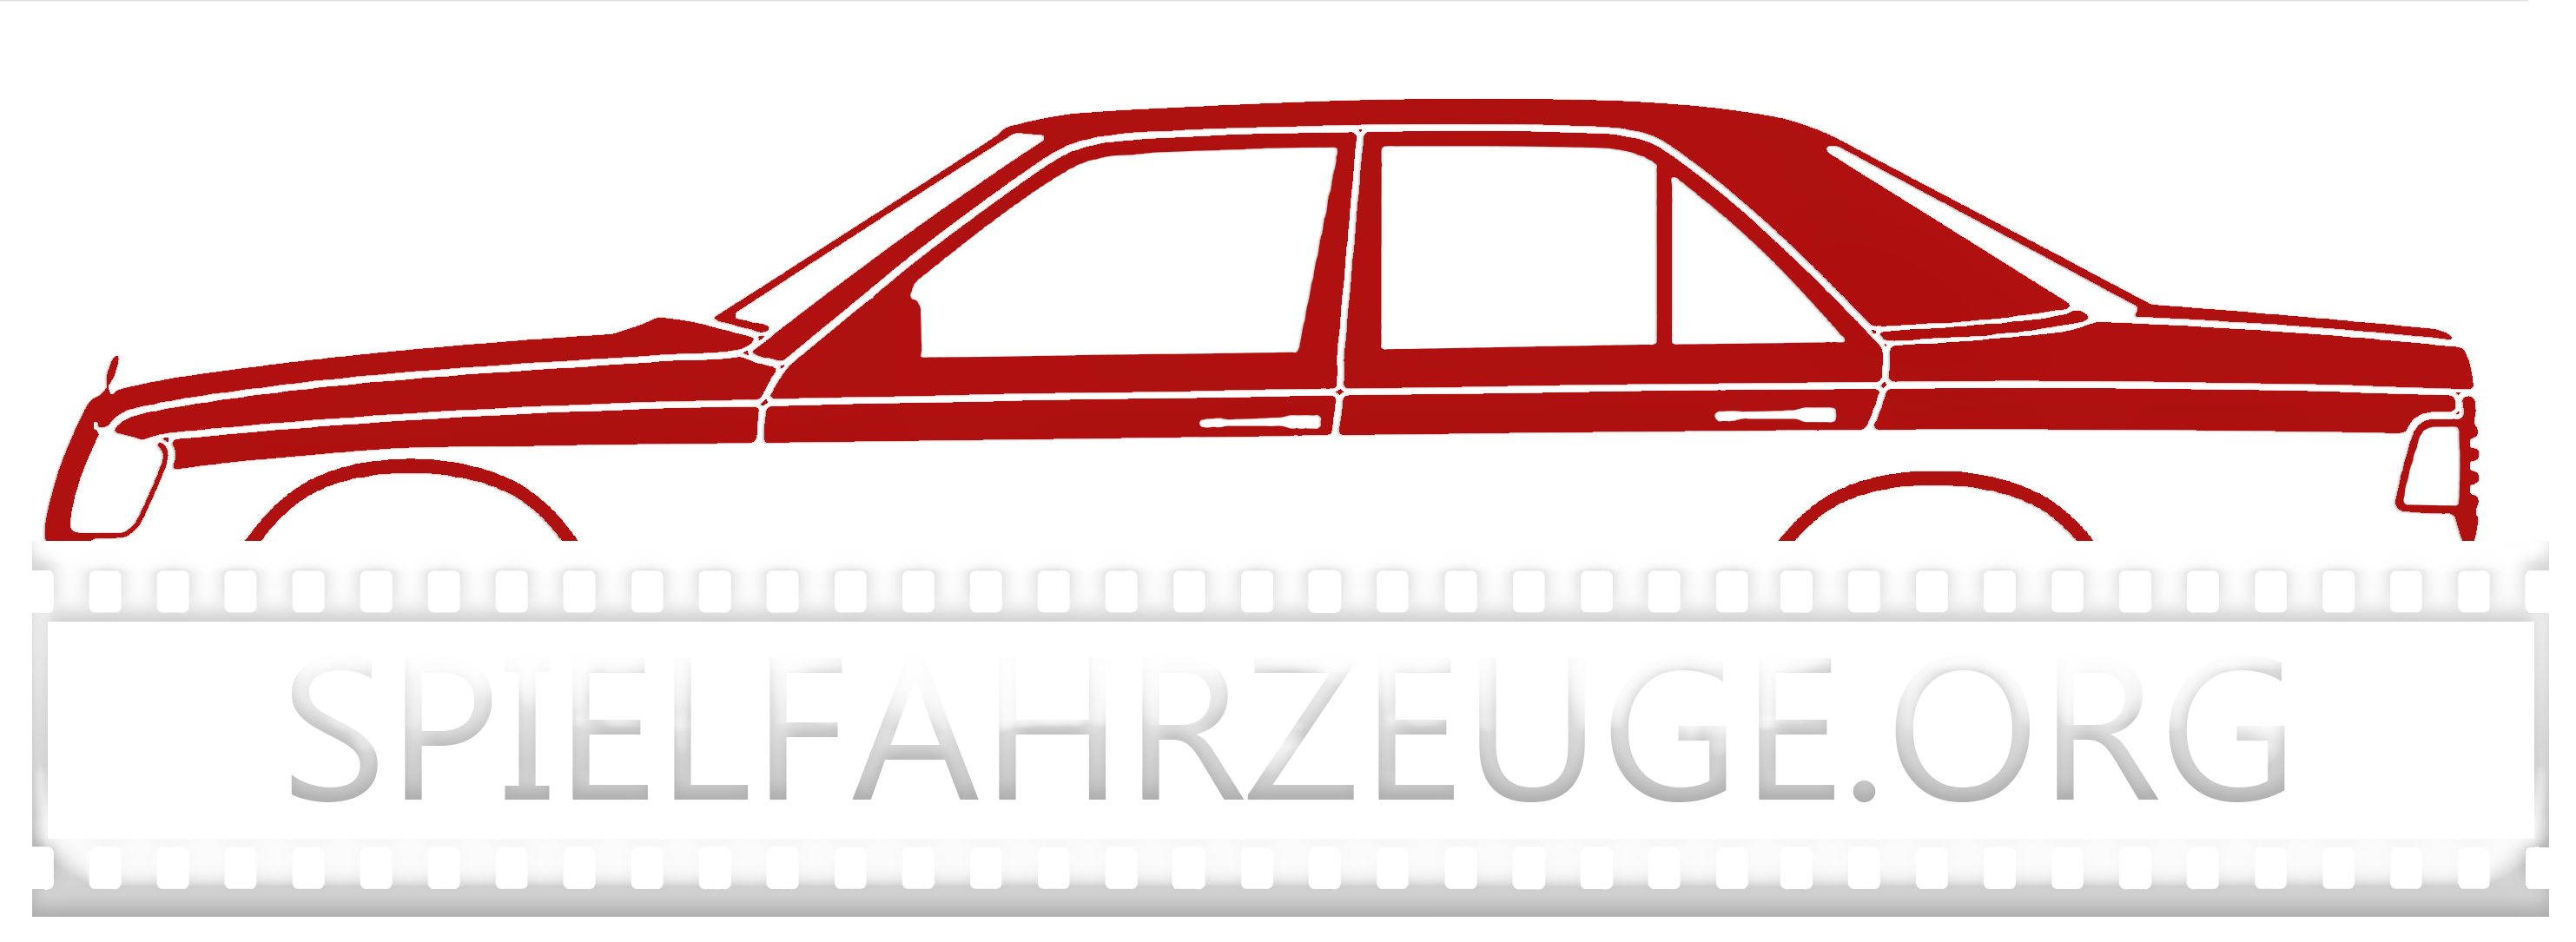 SPIELFAHRZEUGE.org  Oldtimervermietung für Film und Fernsehen